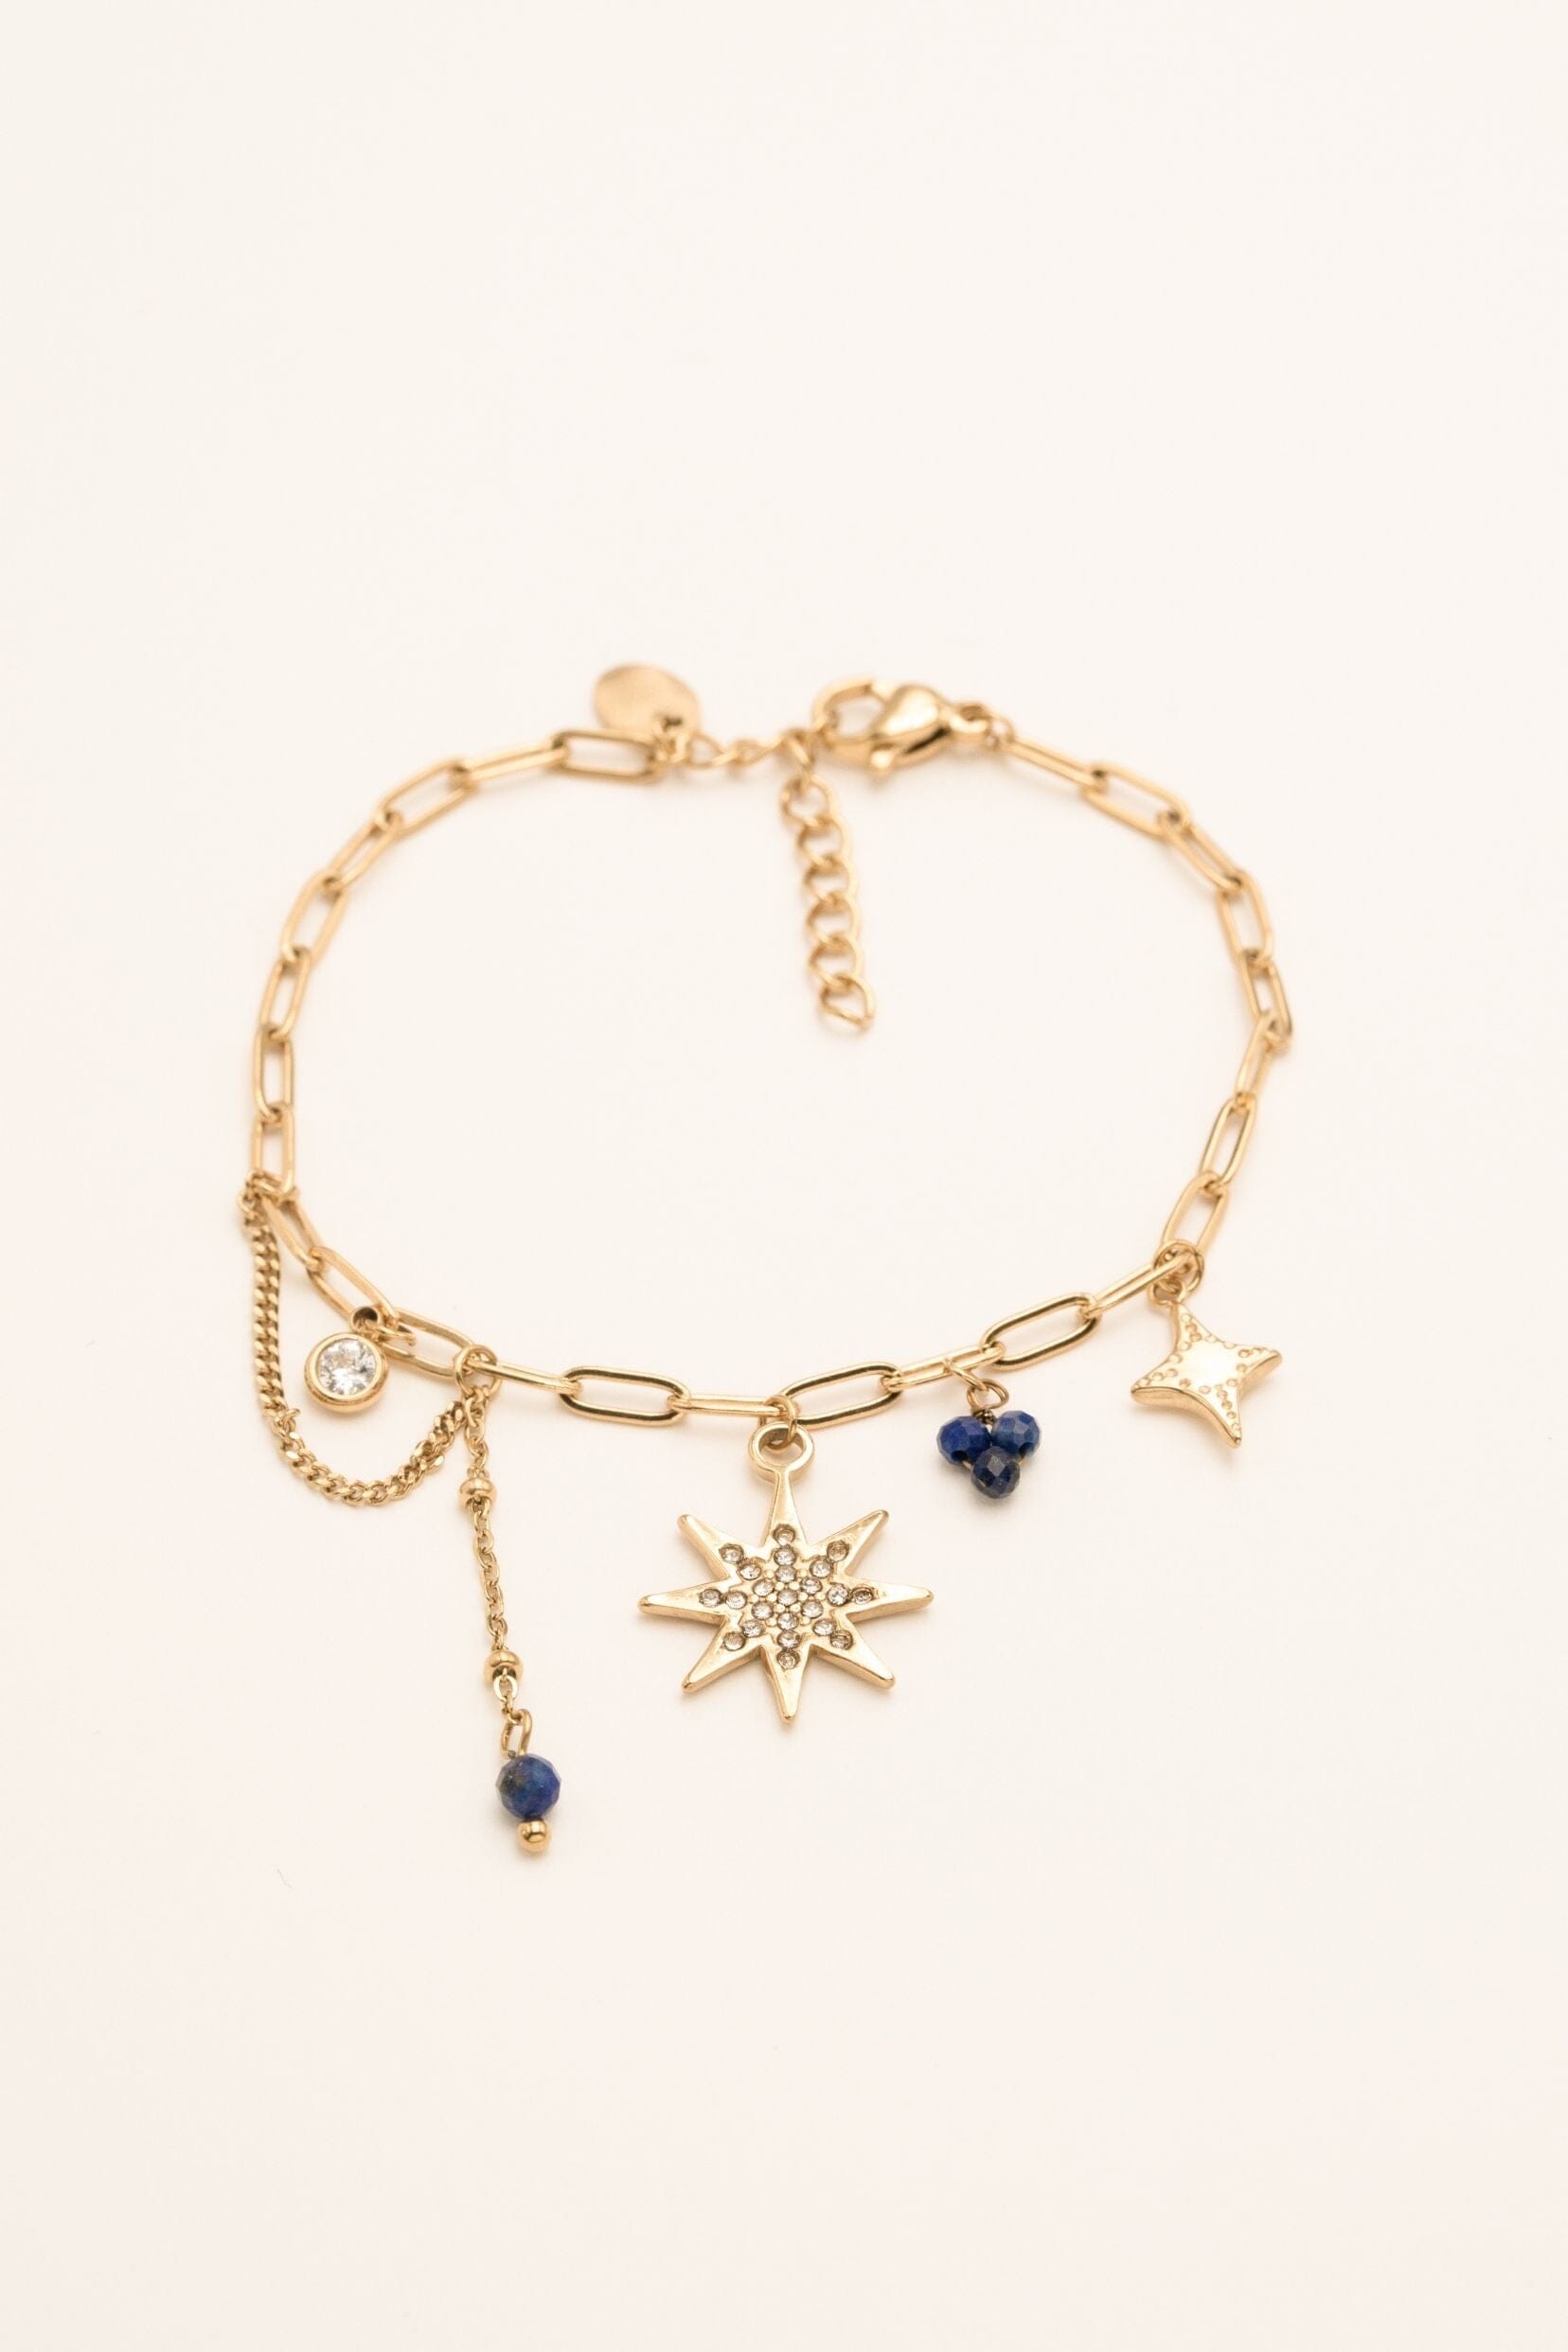 Bracelet Bohm Paris - Adrienne Bohm Paris Lapis Lazuli 